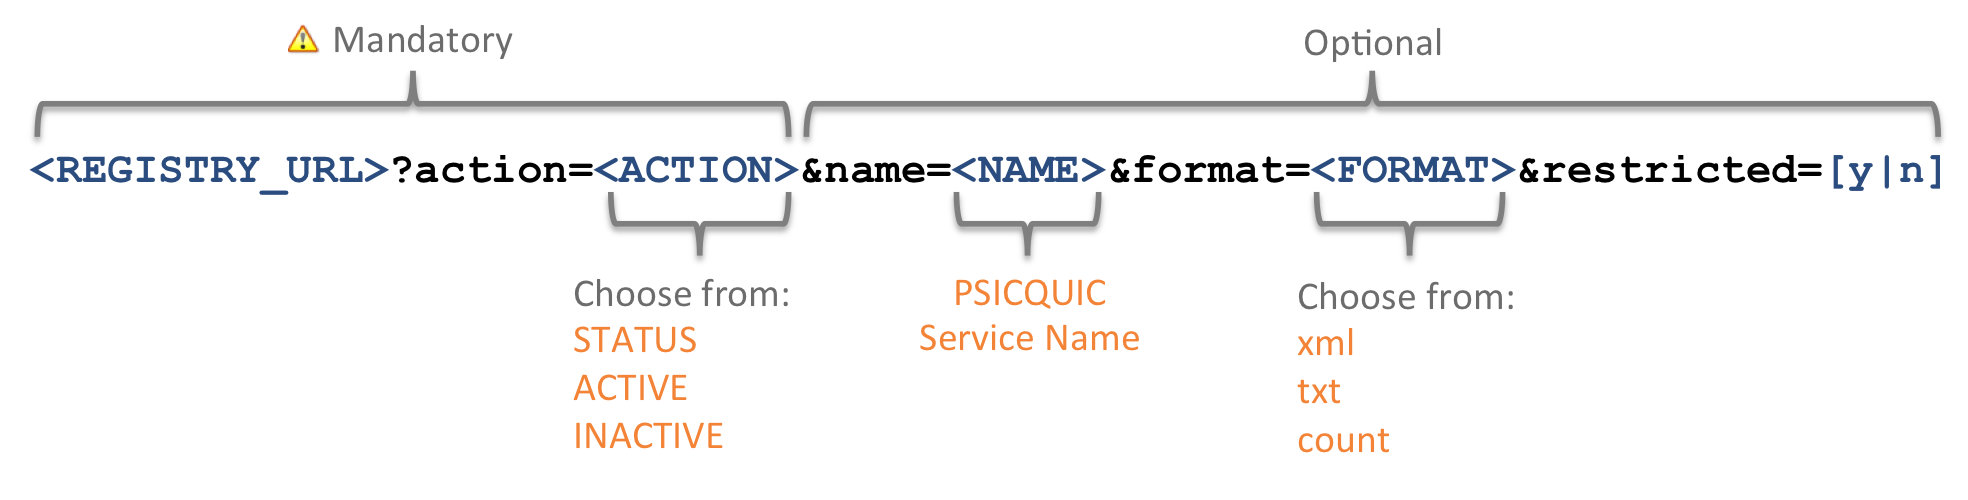 PSICQUIC registry REST URL